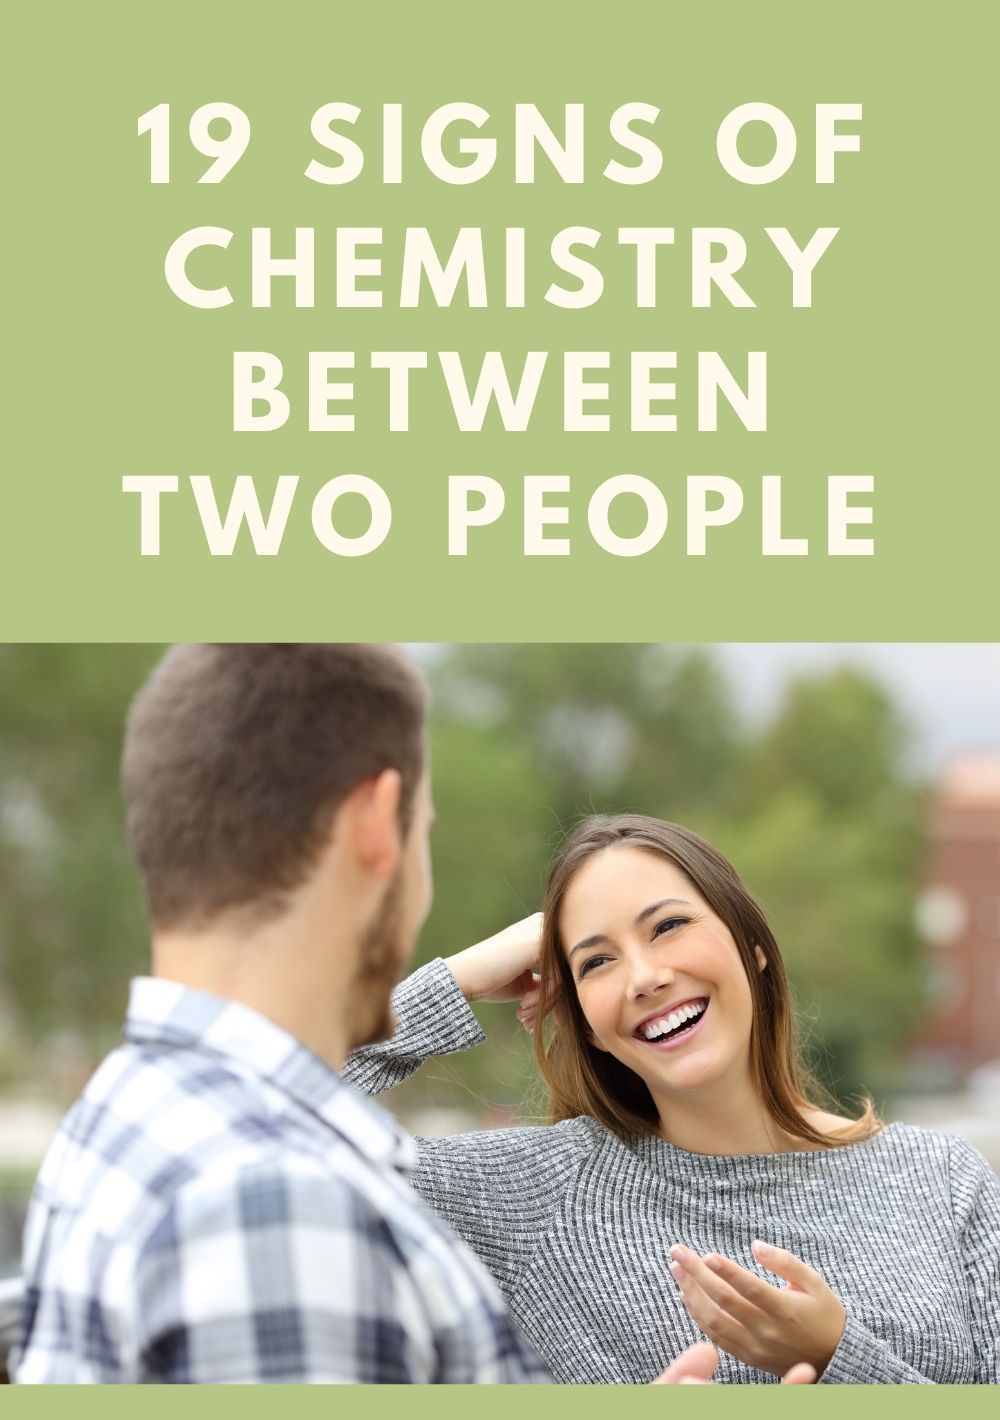 두 사람 사이의 화학 반응